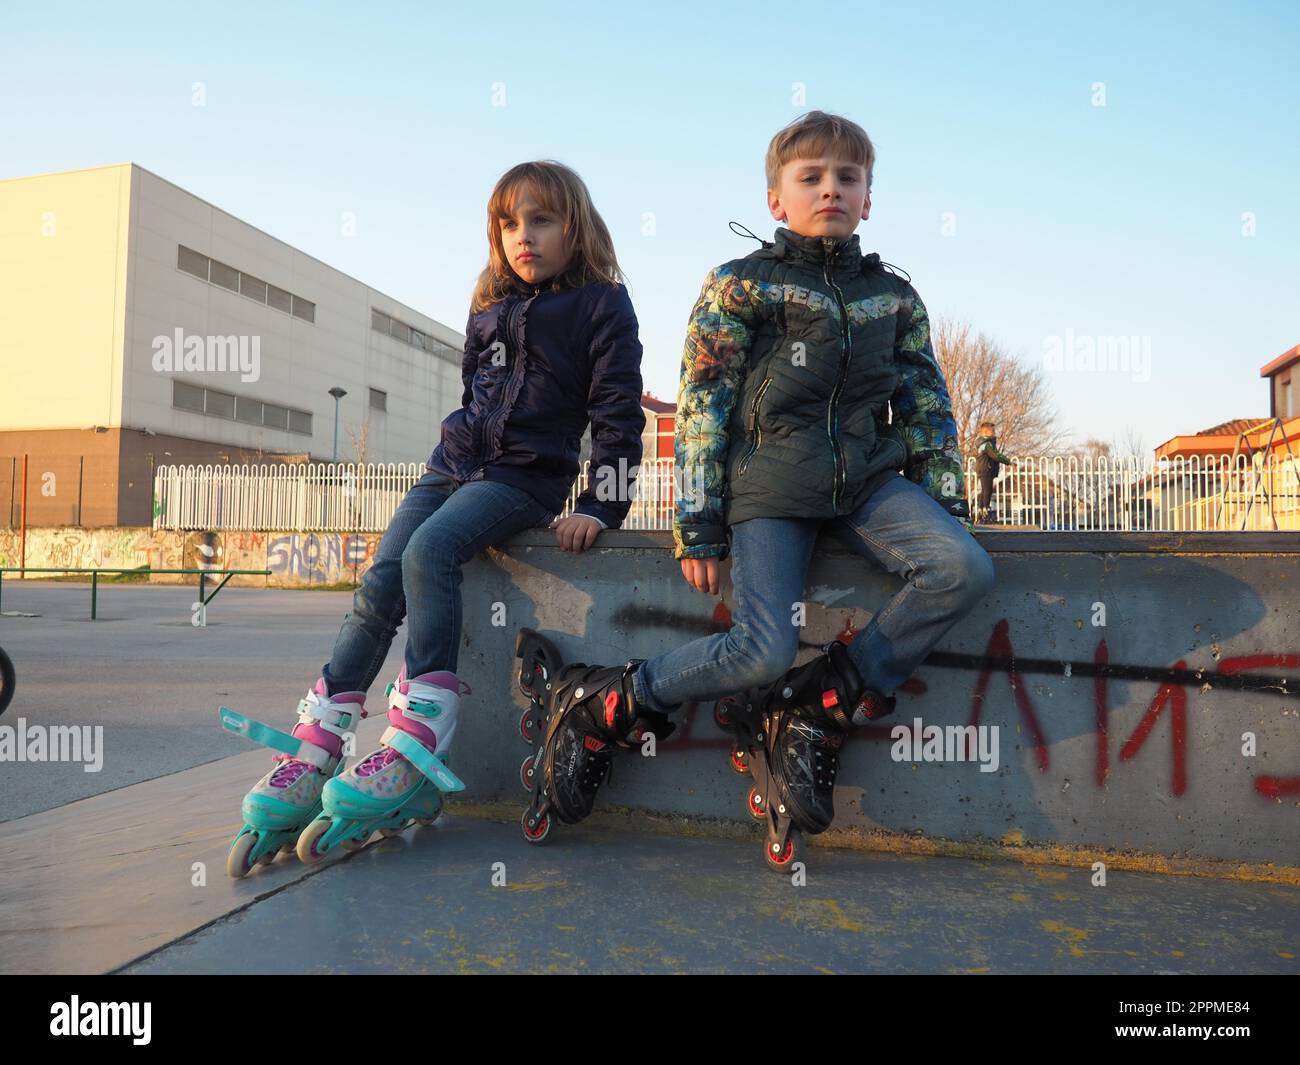 Sremska Mitrovica, Serbia, 7 marzo 2021. Ragazzo e ragazza sui pattini a rotelle sul campo sportivo. Ragazzo e ragazza adolescenti che si riposano dopo il pattinaggio a rotelle. Bambini in abiti stagionali. Foto Stock